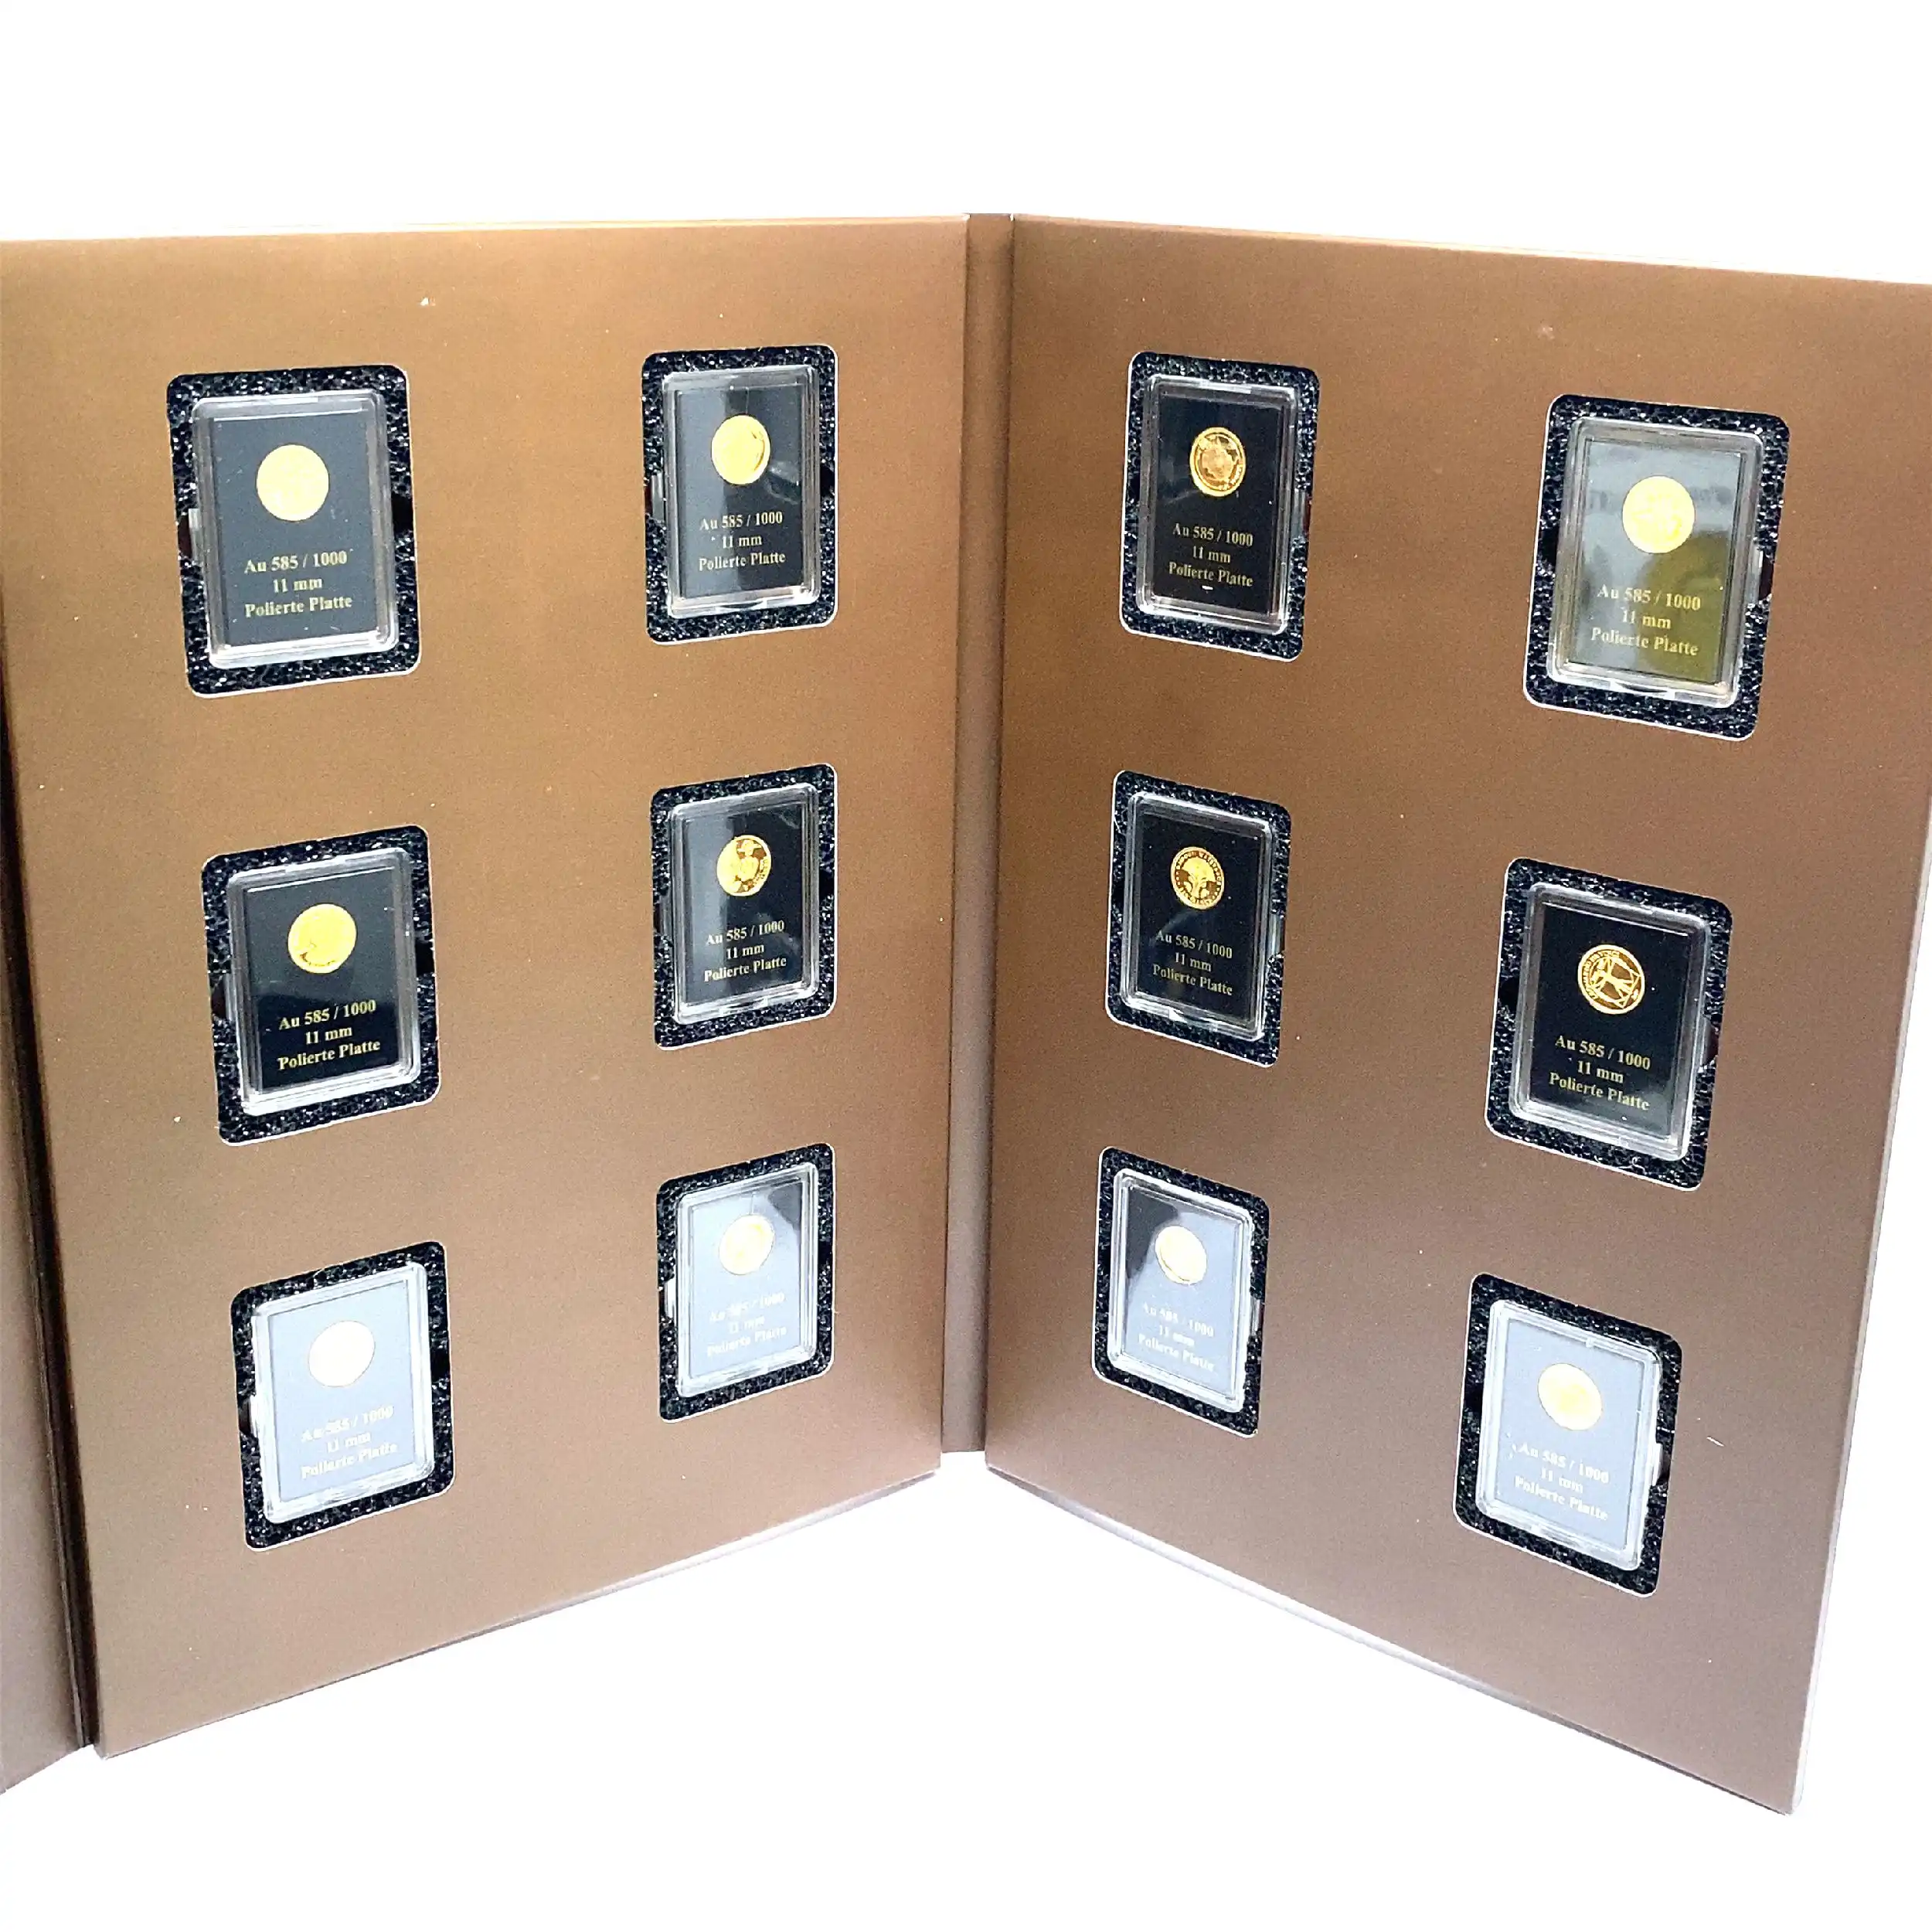 Album "Die kleinsten Goldmünzen der Welt" mit Zertifikat